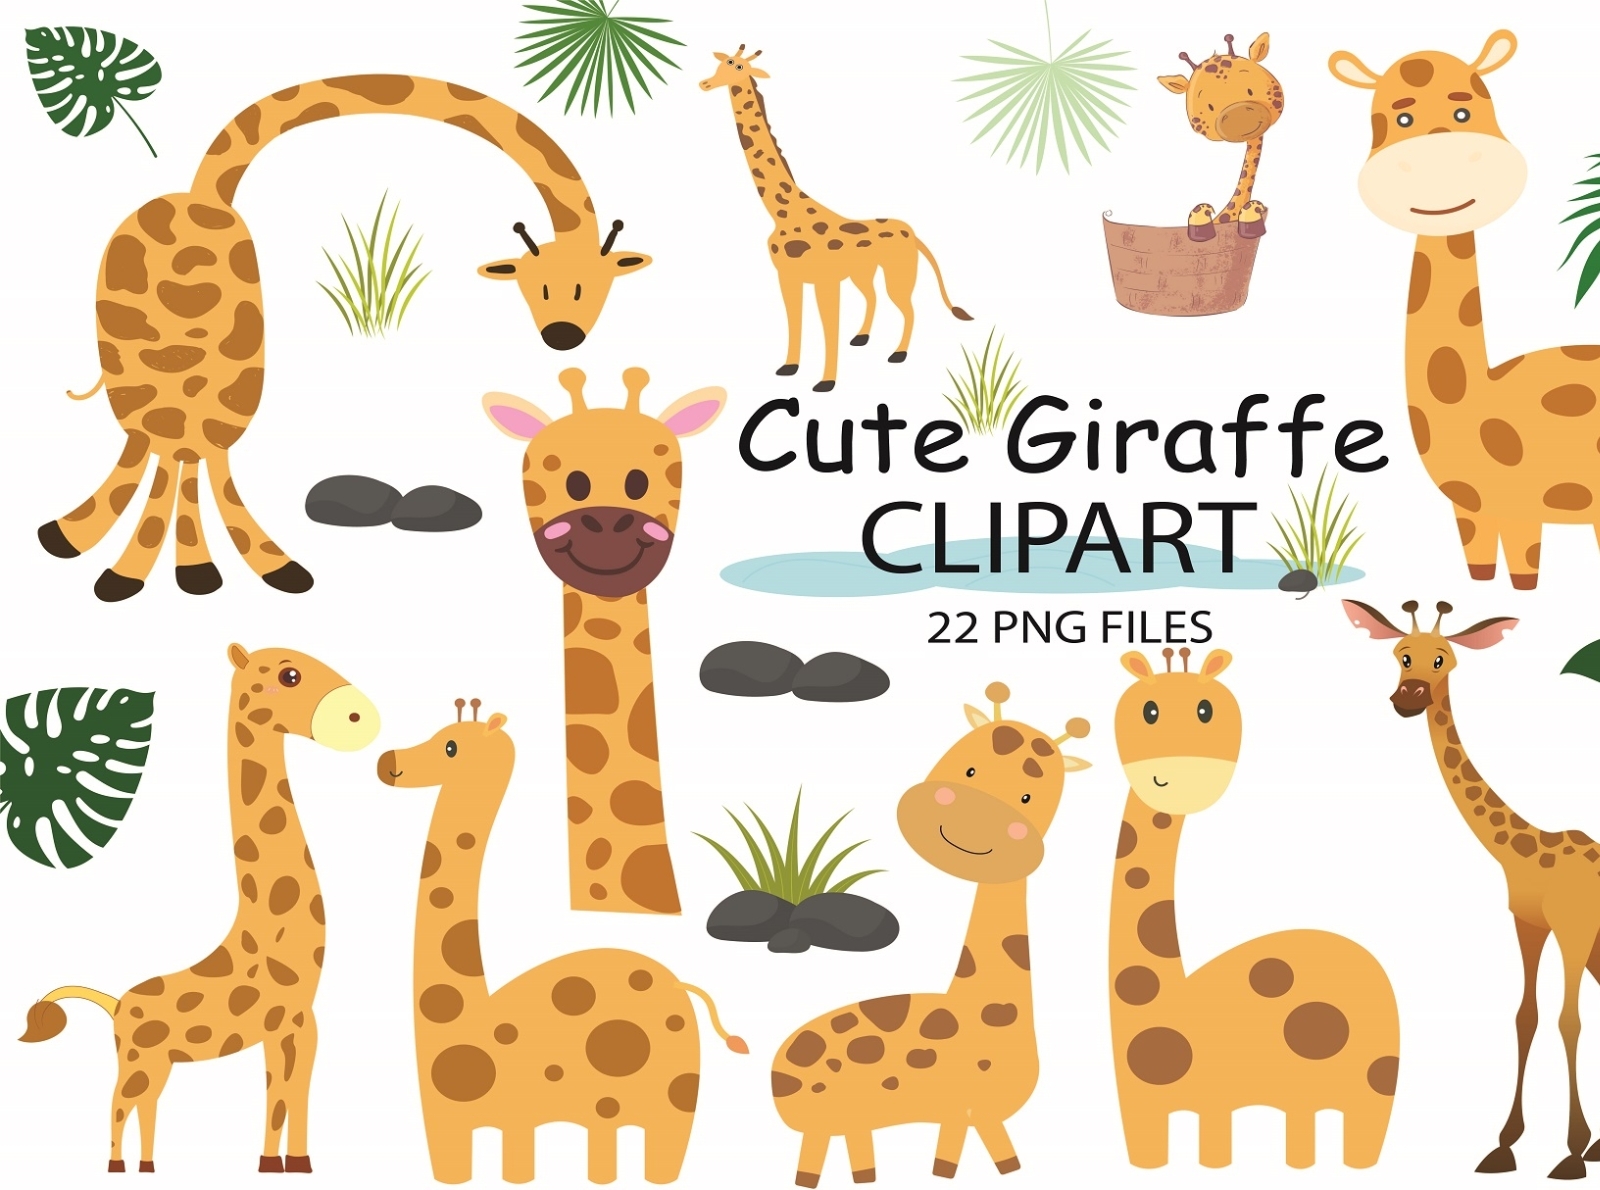 Watercolor Giraffe Clipart by Zyan on Dribbble